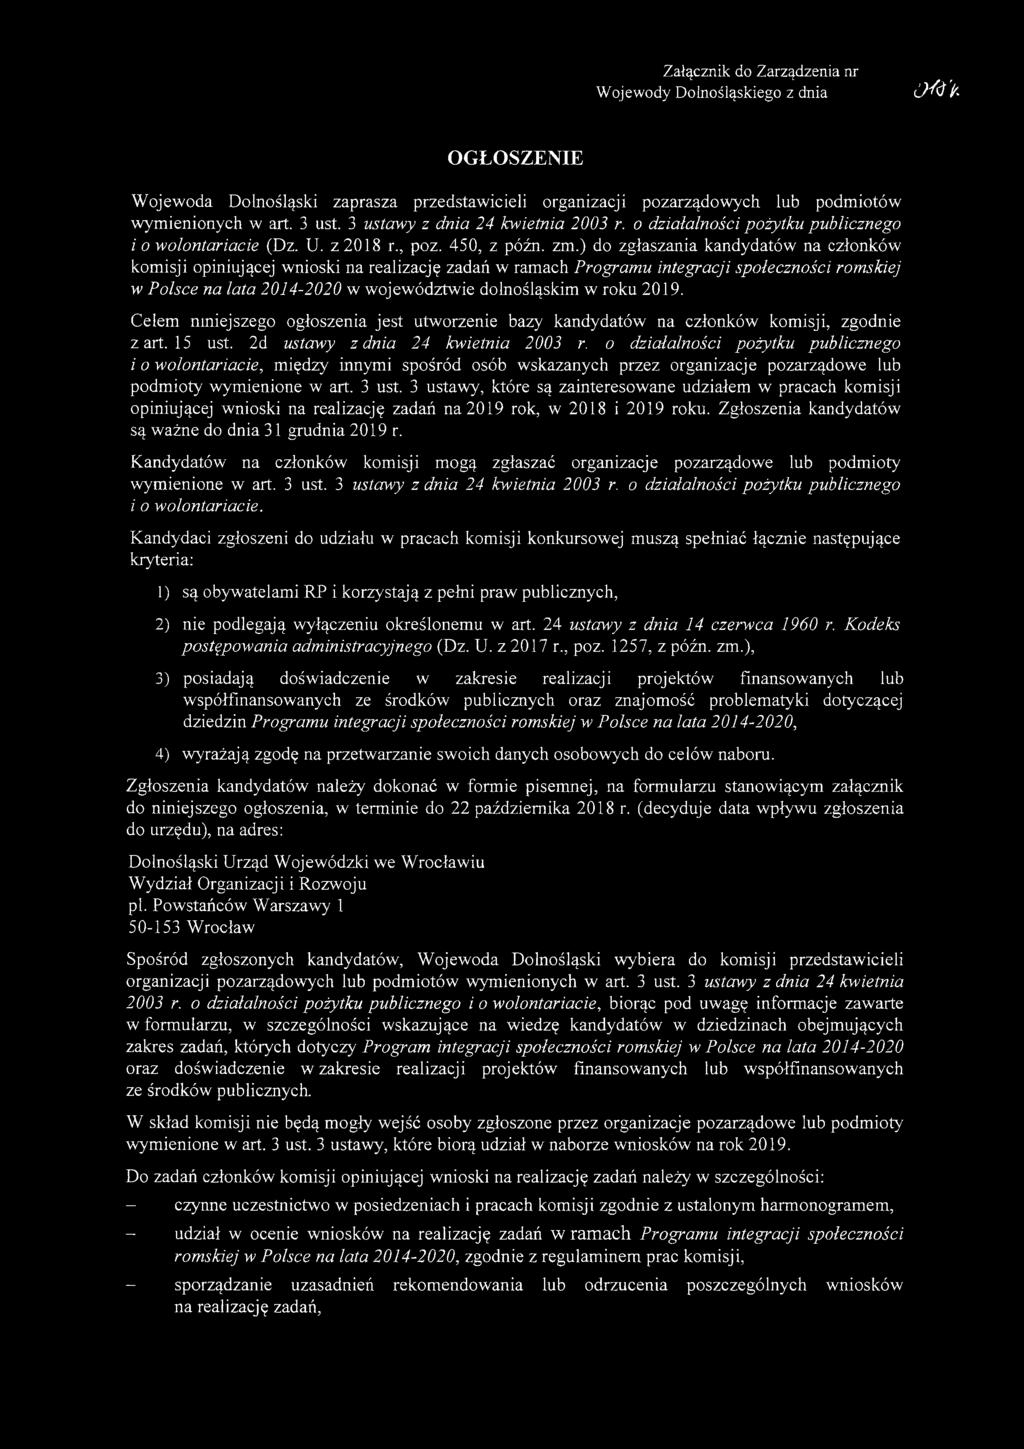 ) do zgłaszania kandydatów na członków komisji opiniującej wnioski na realizację zadań w ramach Programu integracji społeczności romskiej w Polsce na lata 2014-2020 w województwie dolnośląskim w roku